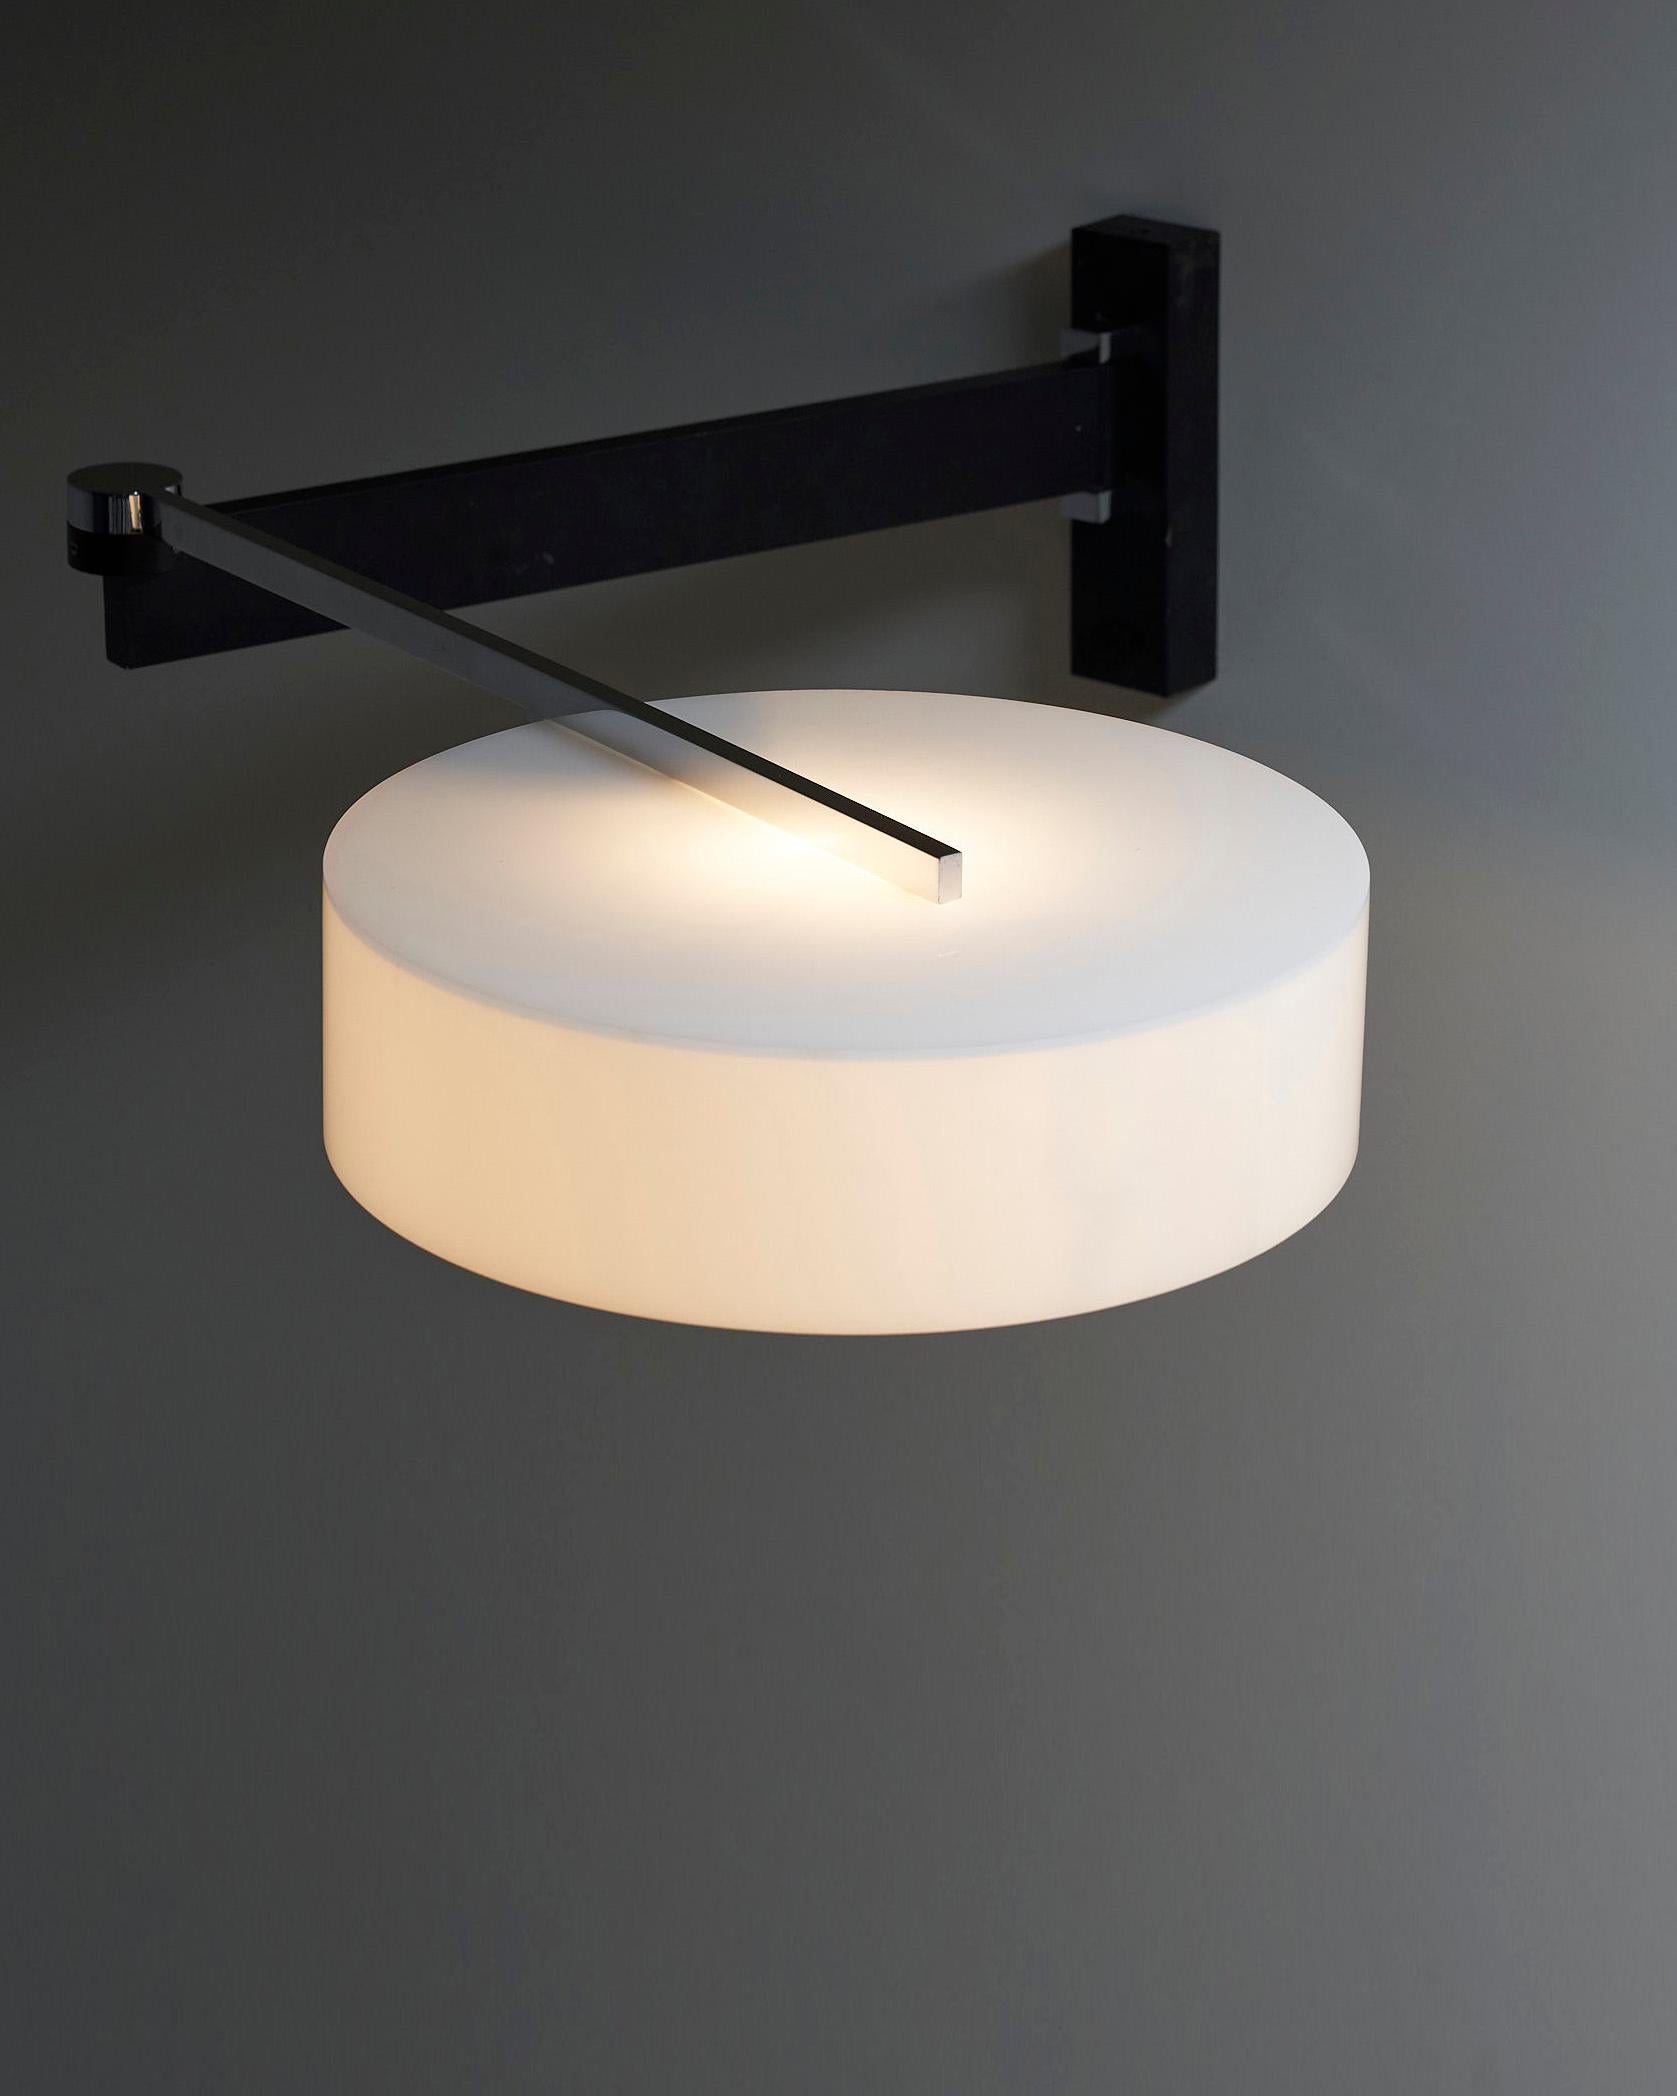 Die Swivel Arm Wall Lamp von Cosack ist eine atemberaubende und elegante Beleuchtungslösung, die Stil und Funktionalität vereint. Diese Wandleuchte besticht durch ihr raffiniertes Design, das jede Einrichtung aufwertet.

Die Leuchte ist mit zwei